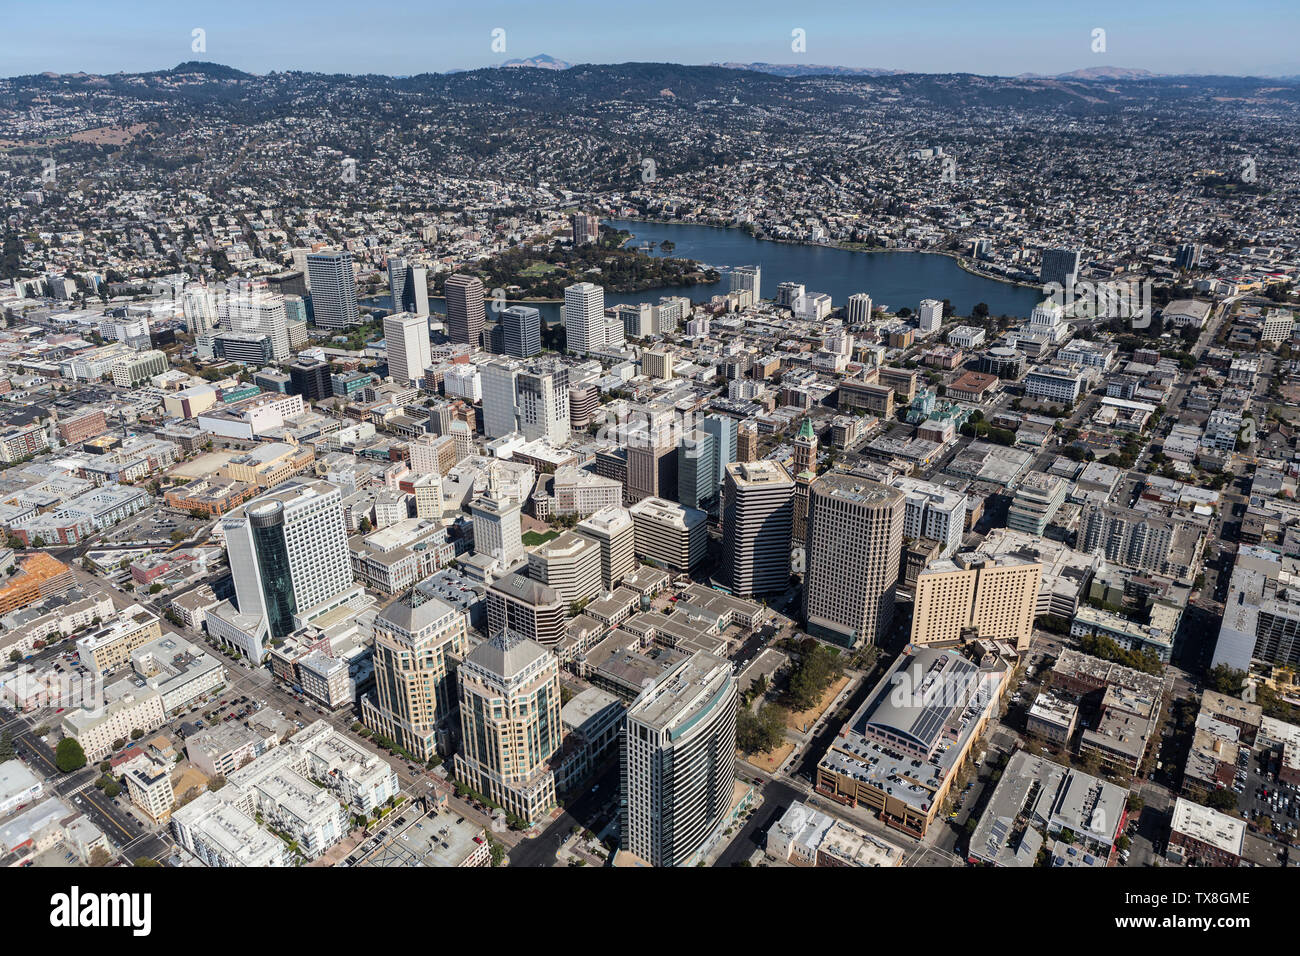 Vista aerea di edifici e strade nel centro cittadino di Oakland, California. Foto Stock